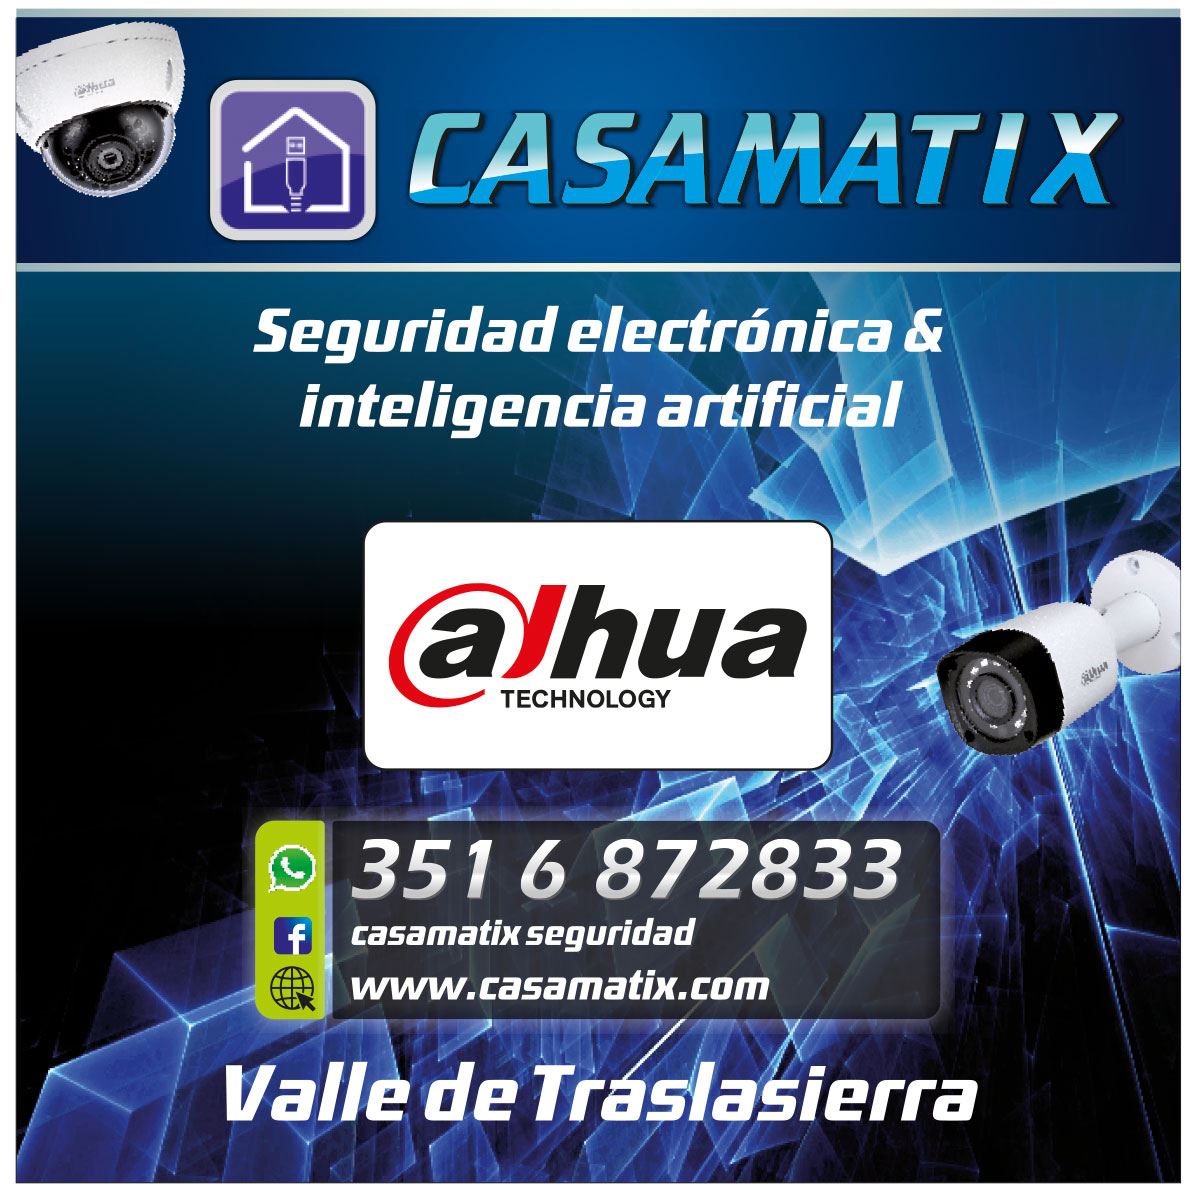 CasaMatix - InfoGuia Traslasierra - Seguridad electrónica - Inteligencia artificial Computación Energías alternativas Cámaras de vigilancia para móviles